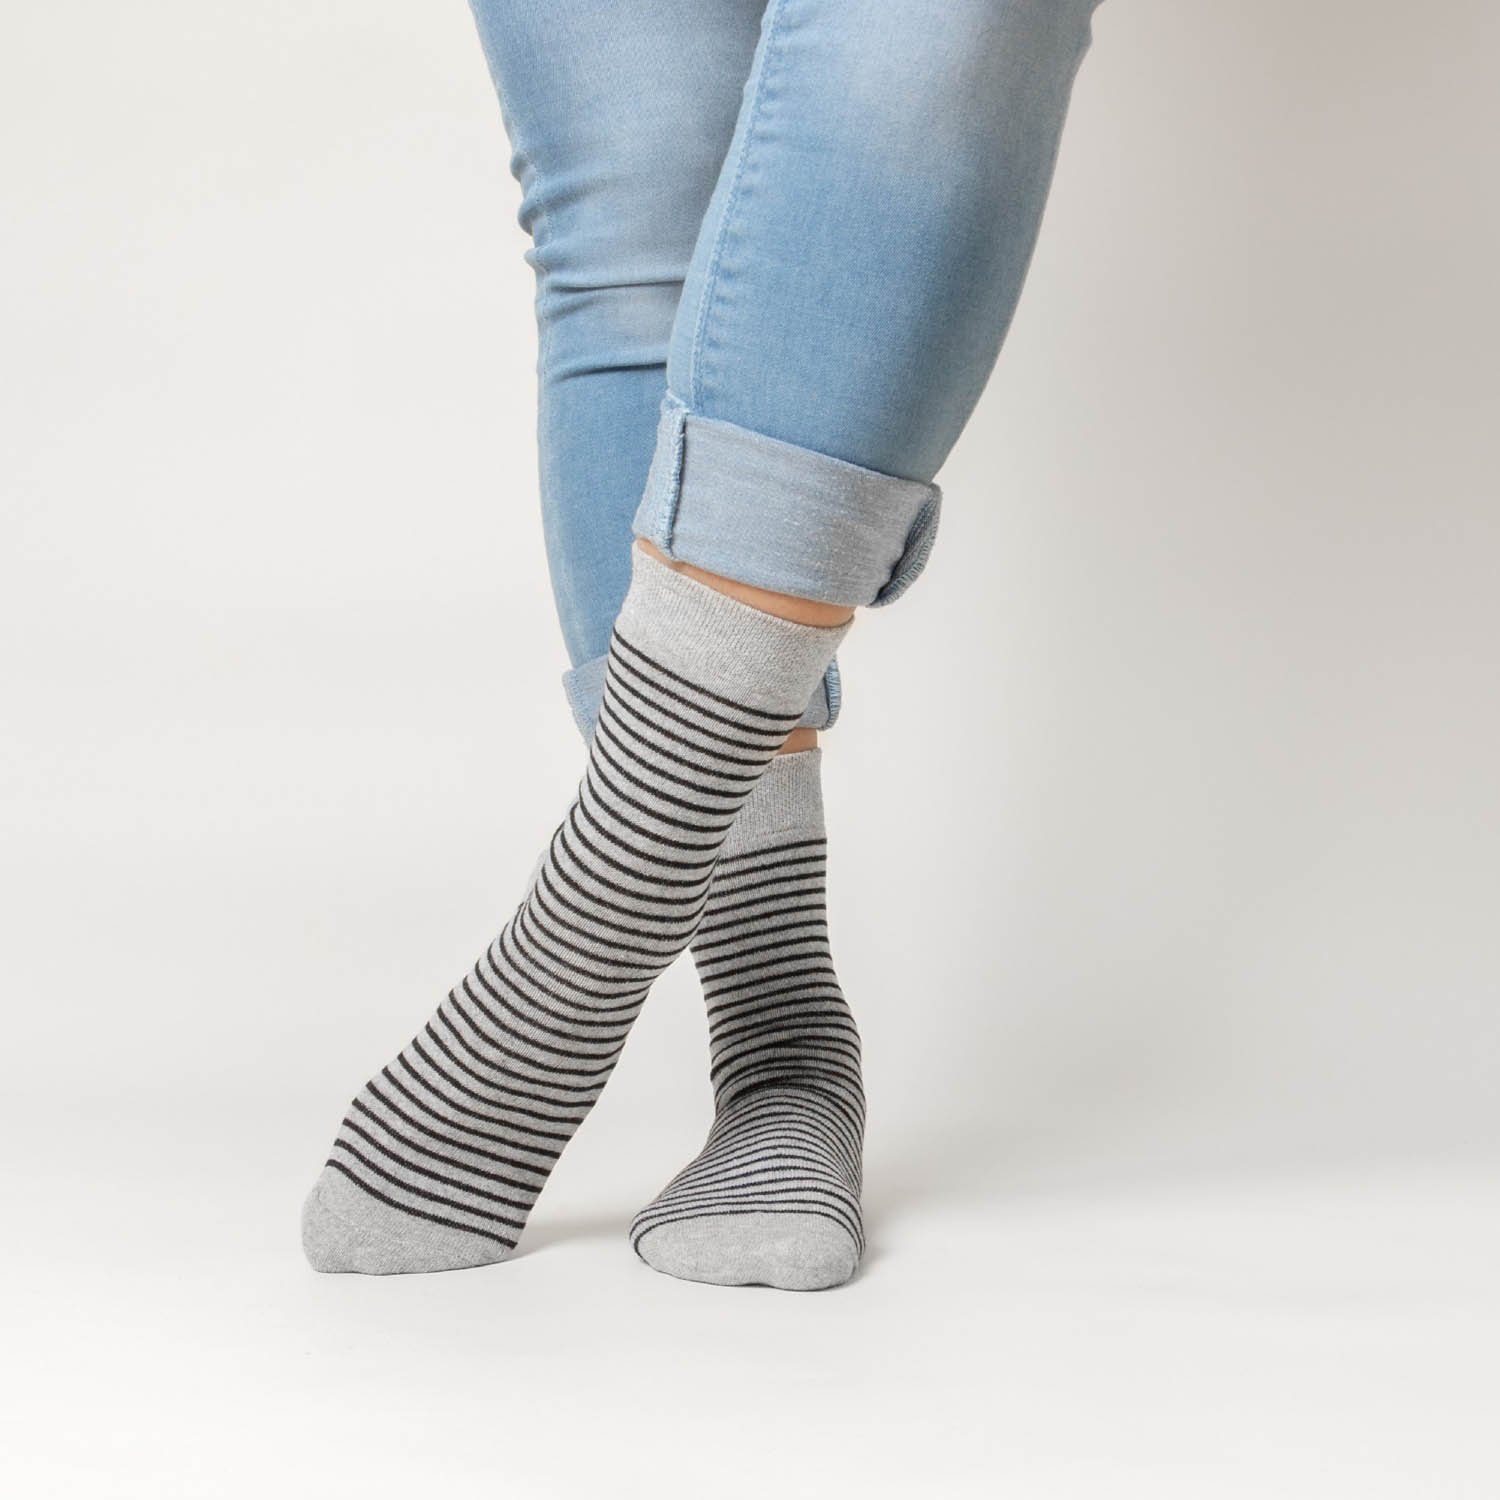 Milka) Socken (Modell: 10 Basicsocken Muster Damen 10Black (10-Paar) Paar OCCULTO